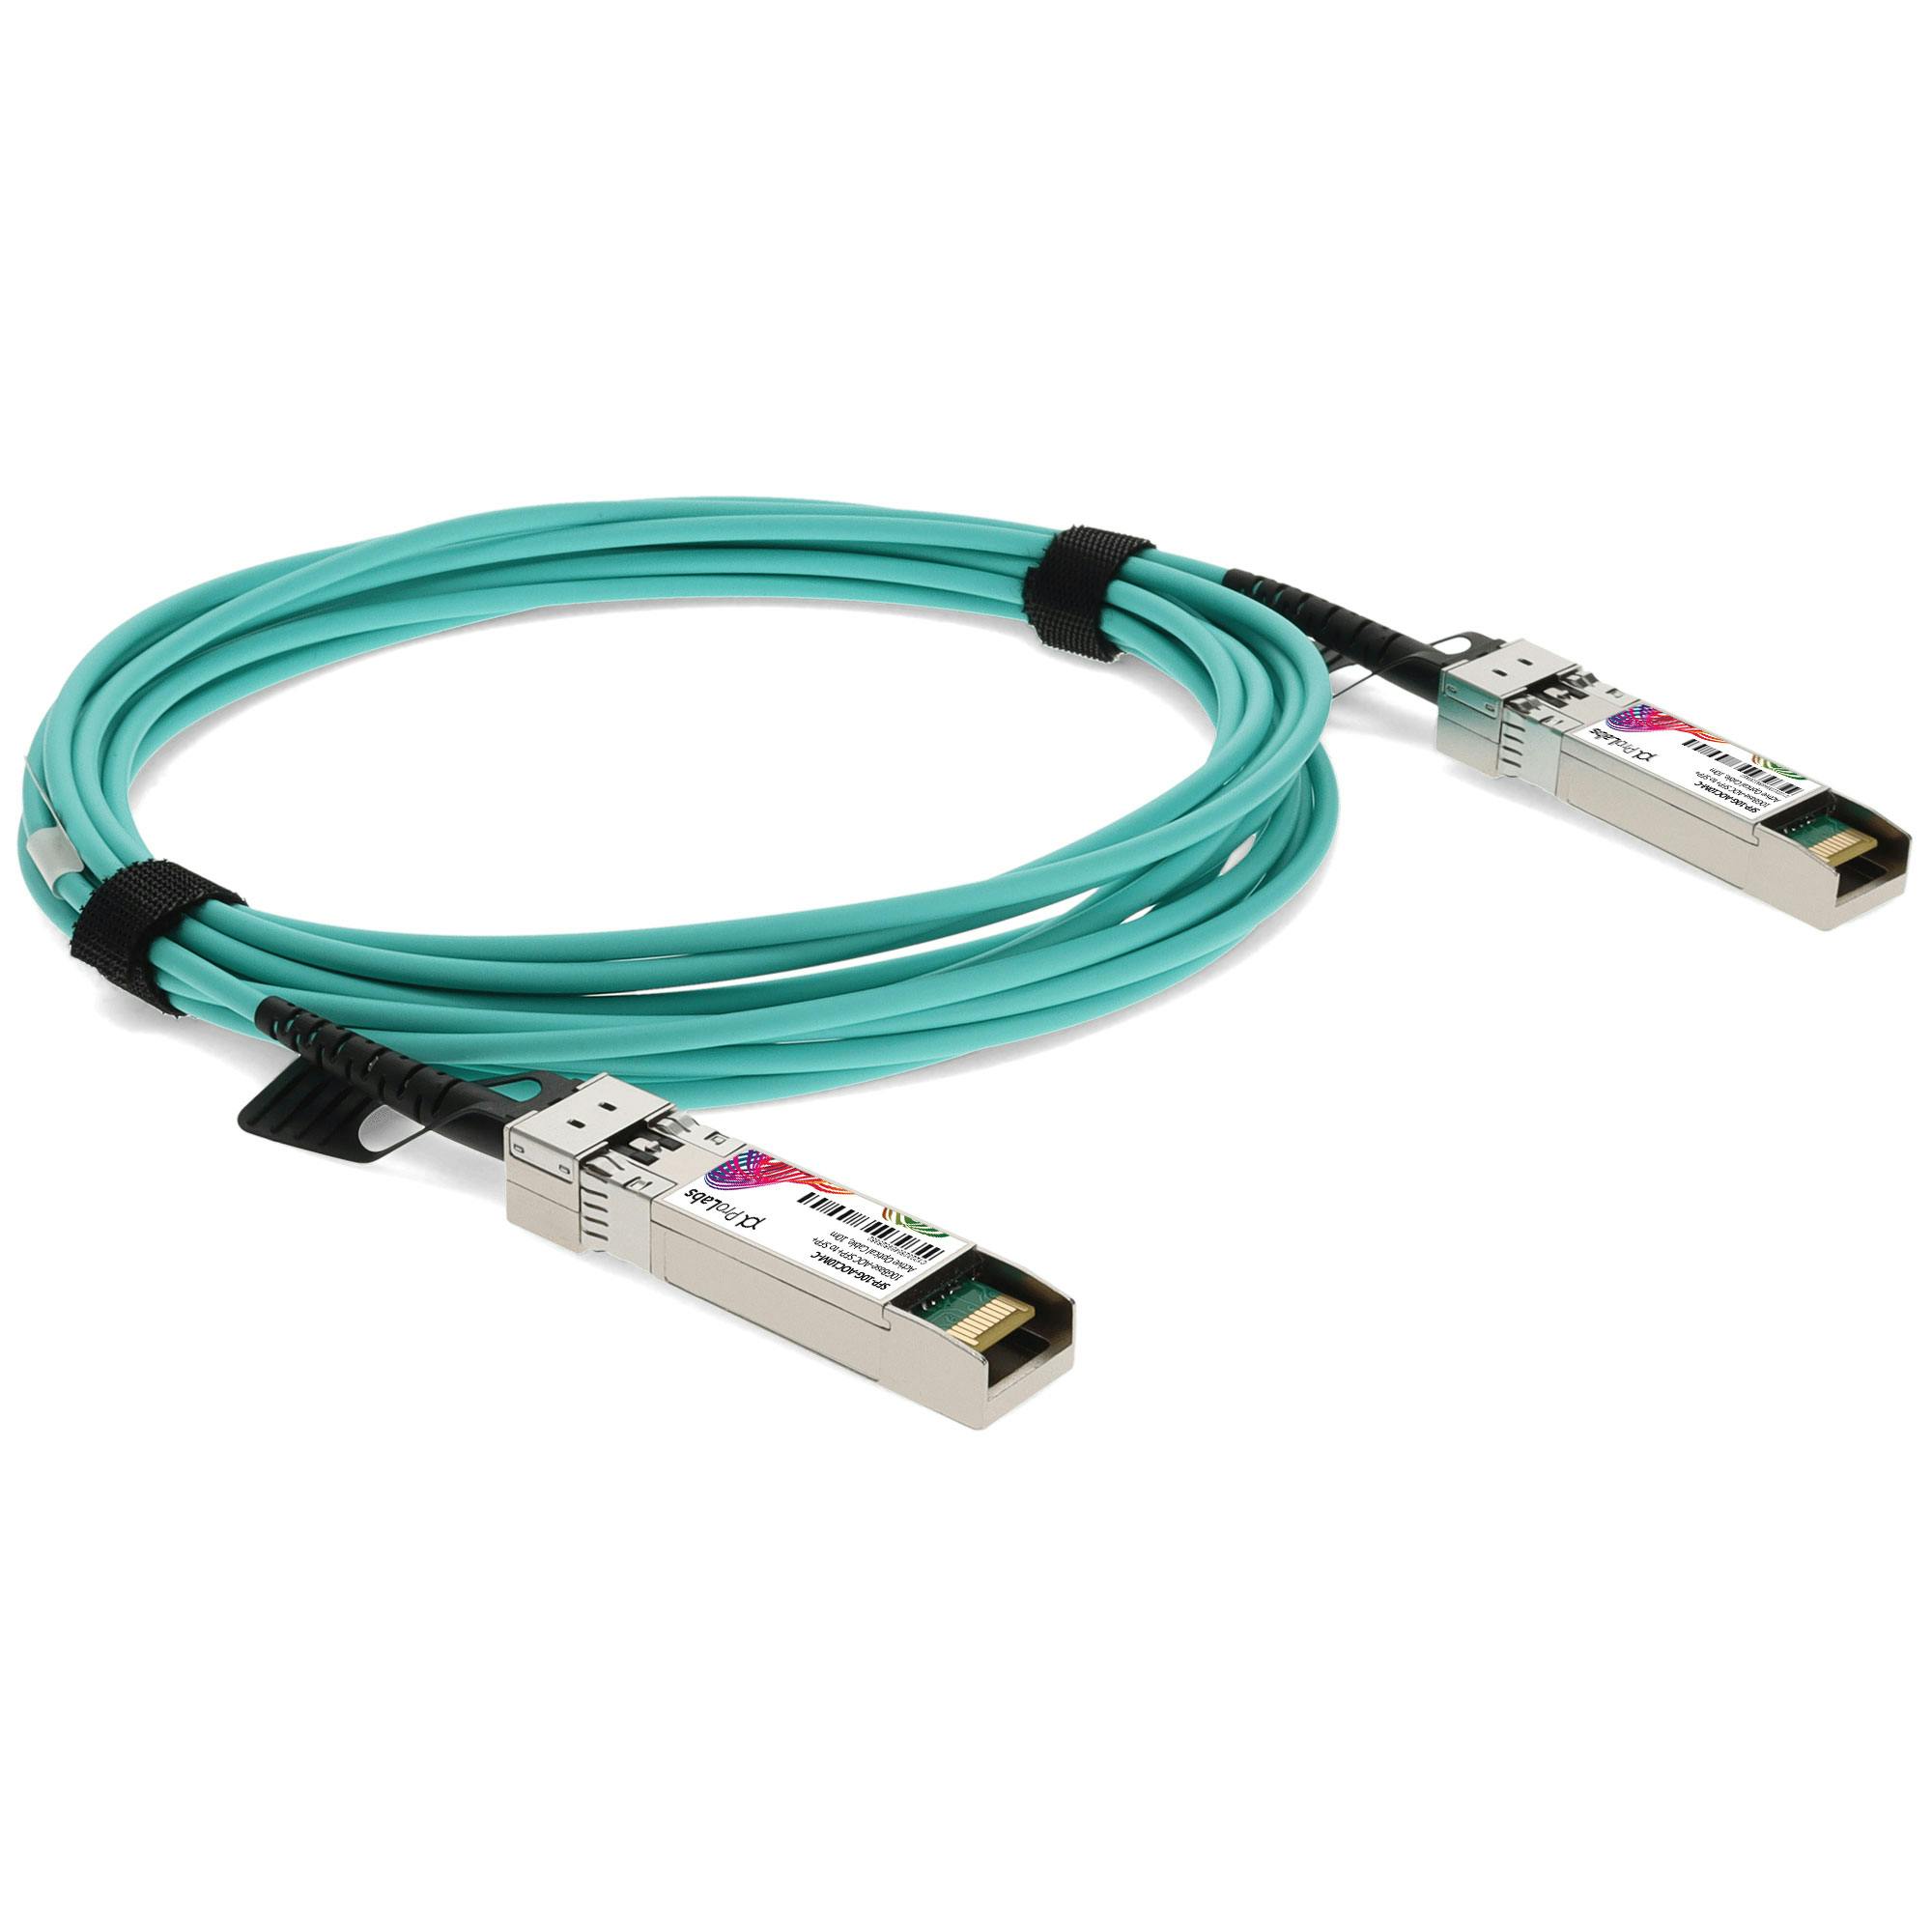 cable 10m 10-2846-01 v01 nuevo v01 New cisco sfp-10g-aoc10m v01 10 GBASE-AOC SFP 